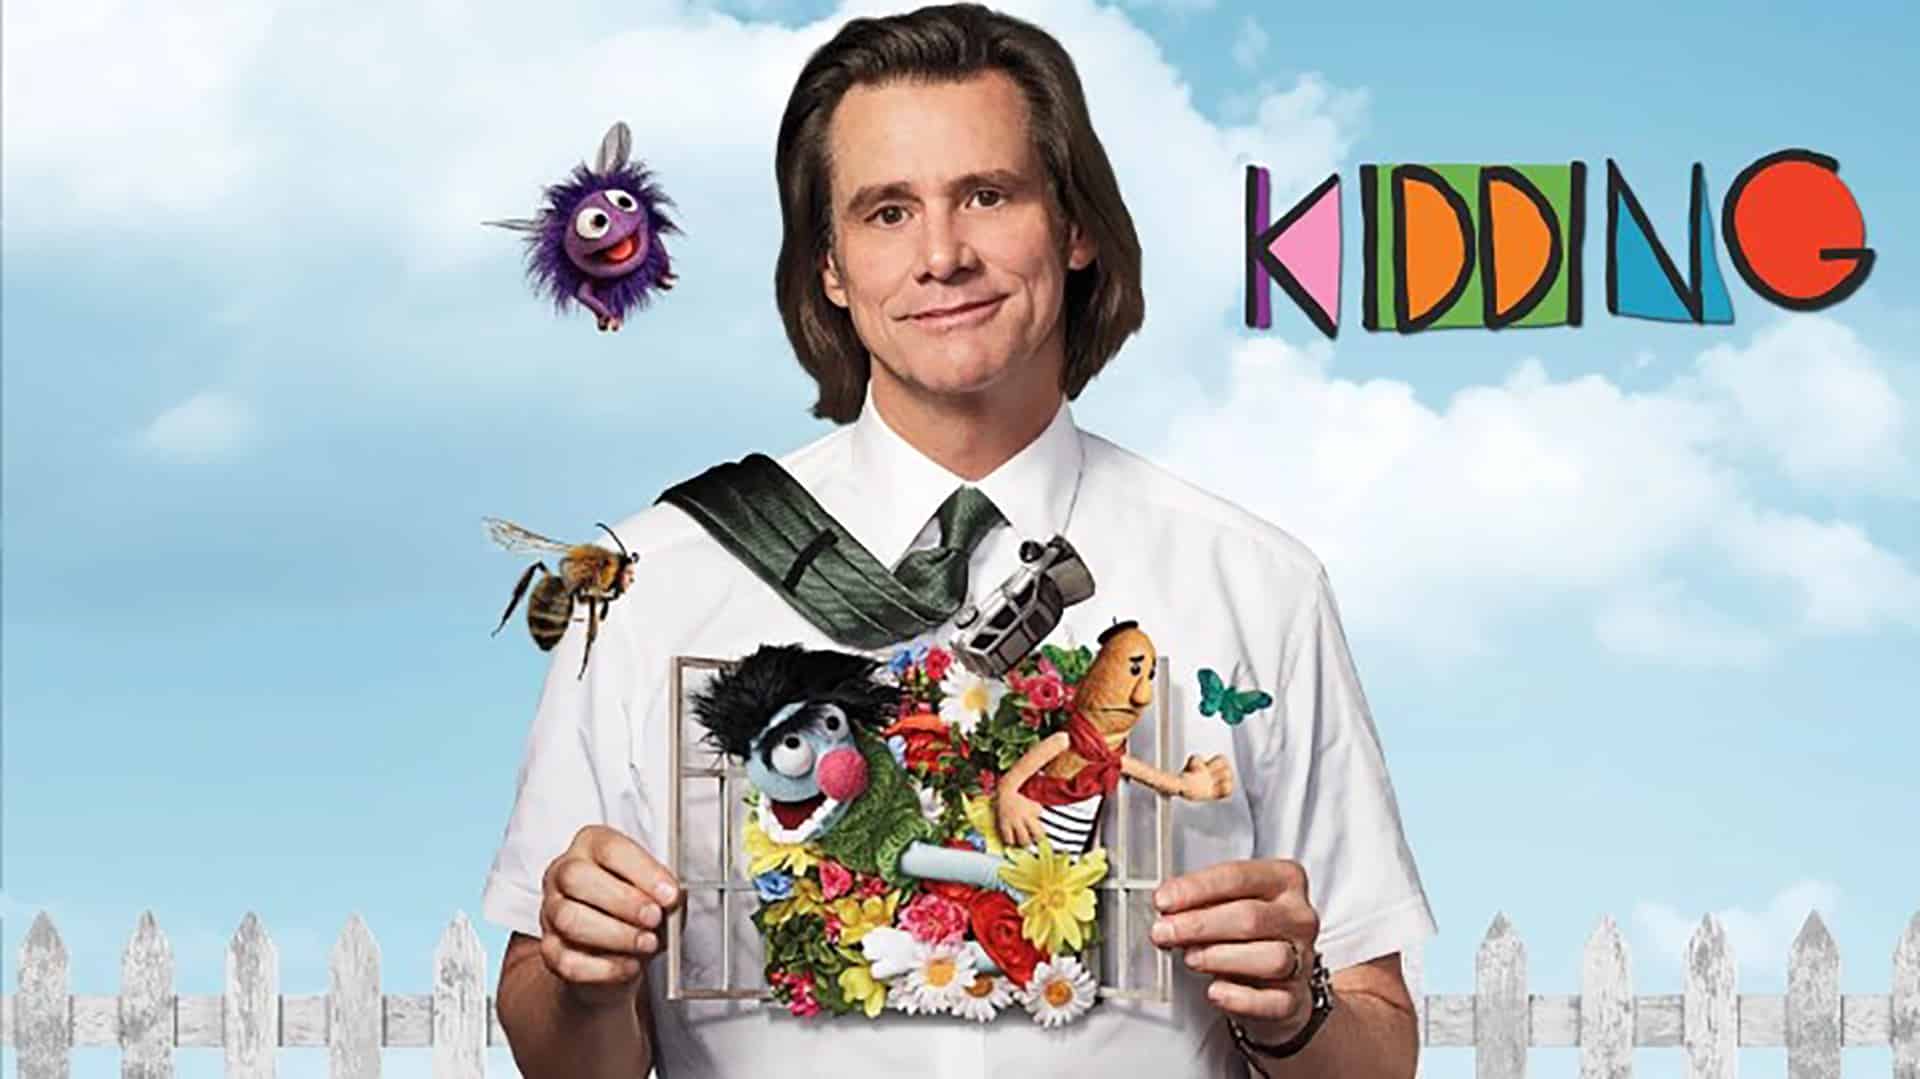 Kidding – Stagione 2: cosa sappiamo sulla serie con Jim Carrey